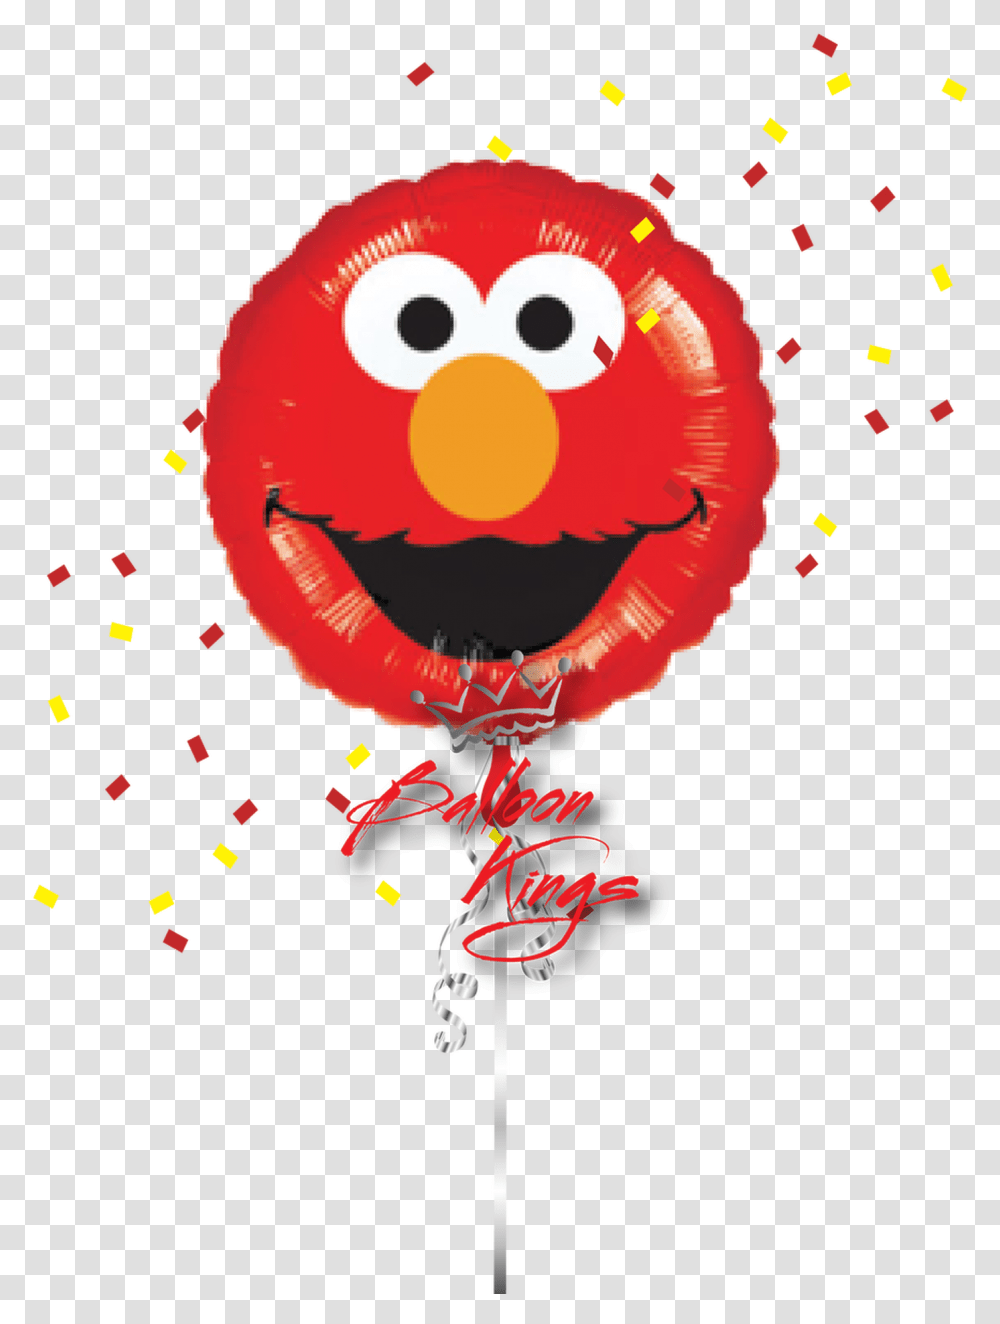 Elmo Smiles Walmart Elmo Balloon, Paper, Confetti, Pinata Transparent Png